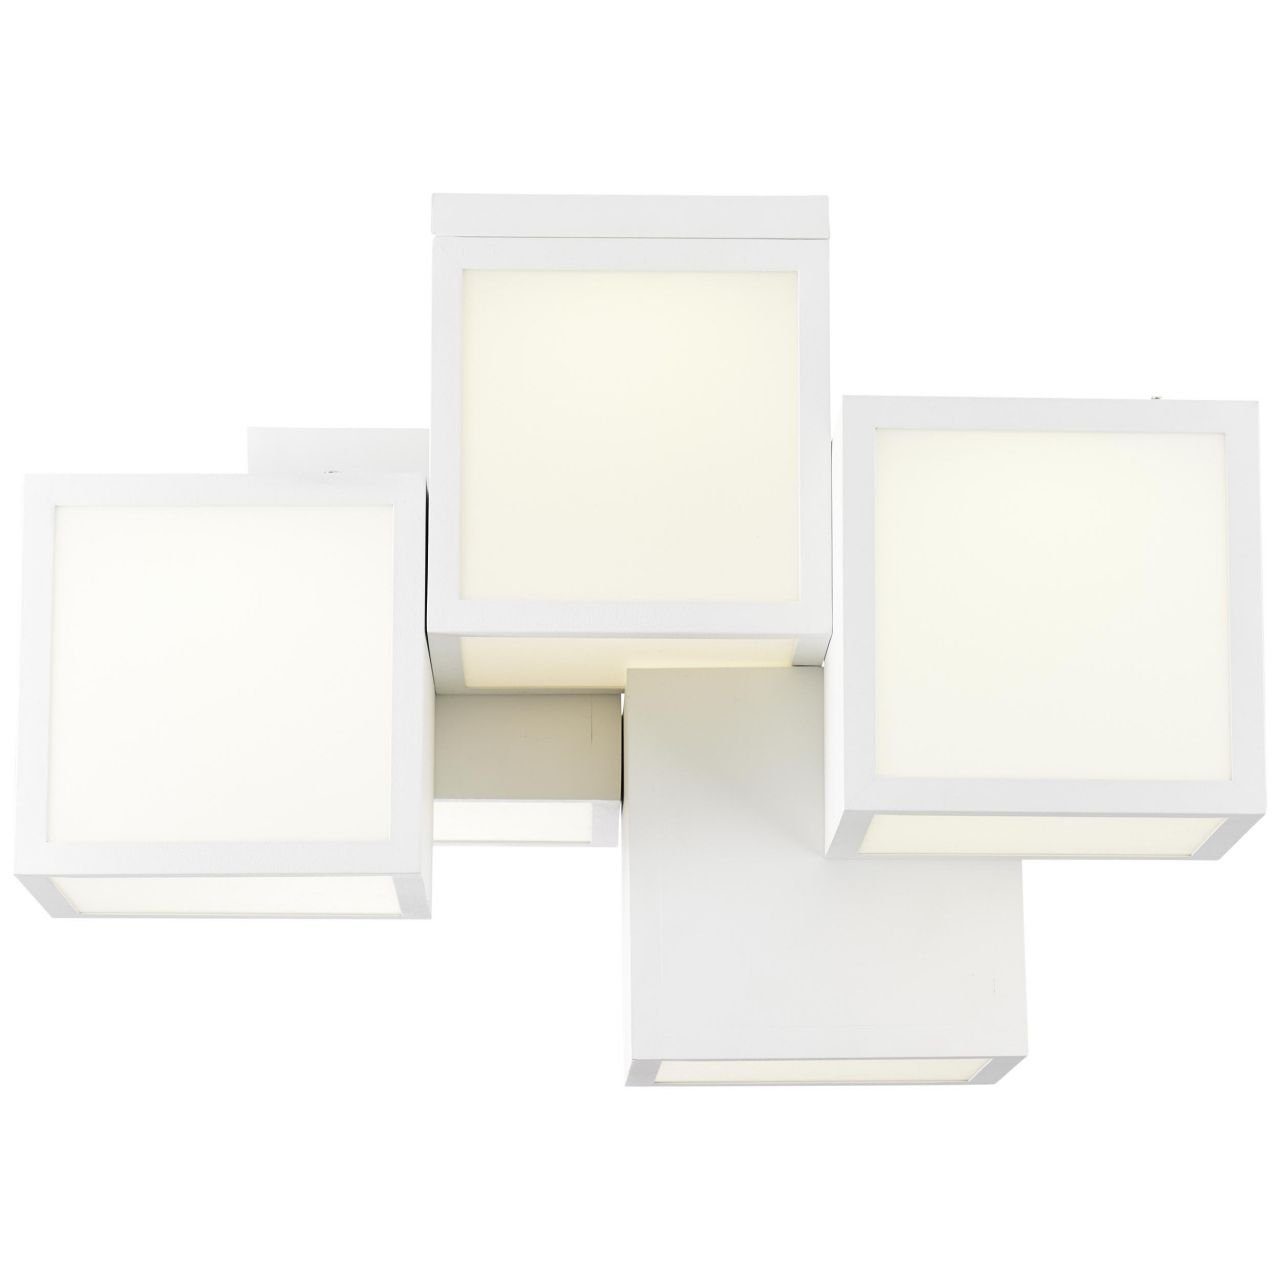 3000K, Lampe, Metall/Kunststoff, Deckenleuchte Cubix LED weiß, Deckenleuchte, Brilliant 5-flammig 1x Cubix,